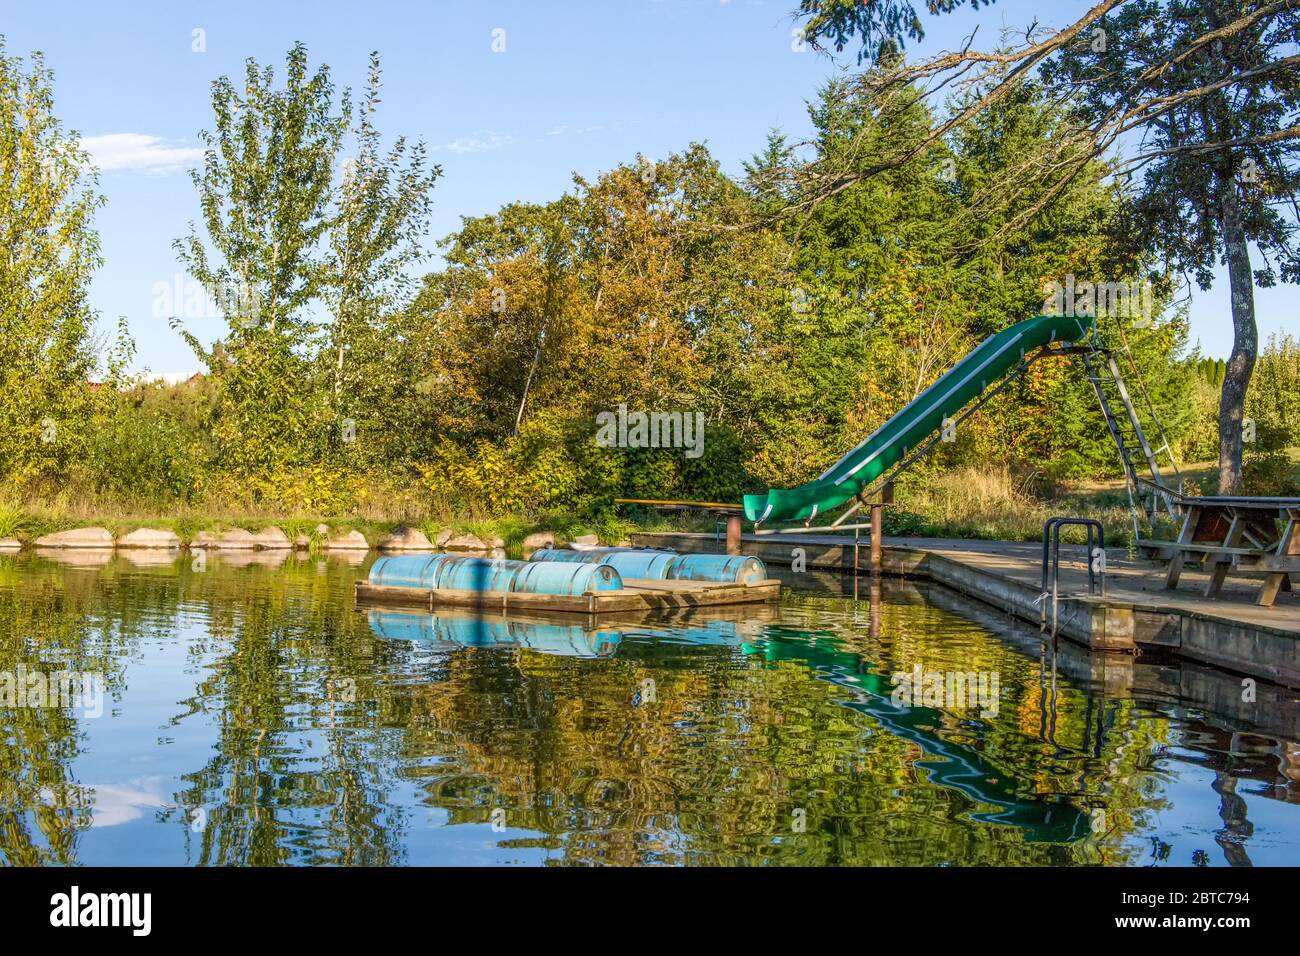 Granja estanque convertido en un sitio recreativo con un tobogán y muelle flotante (embarcadero), una plataforma apoyada por pontones, cerca de Hood River, Oregon, EE.UU Foto de stock